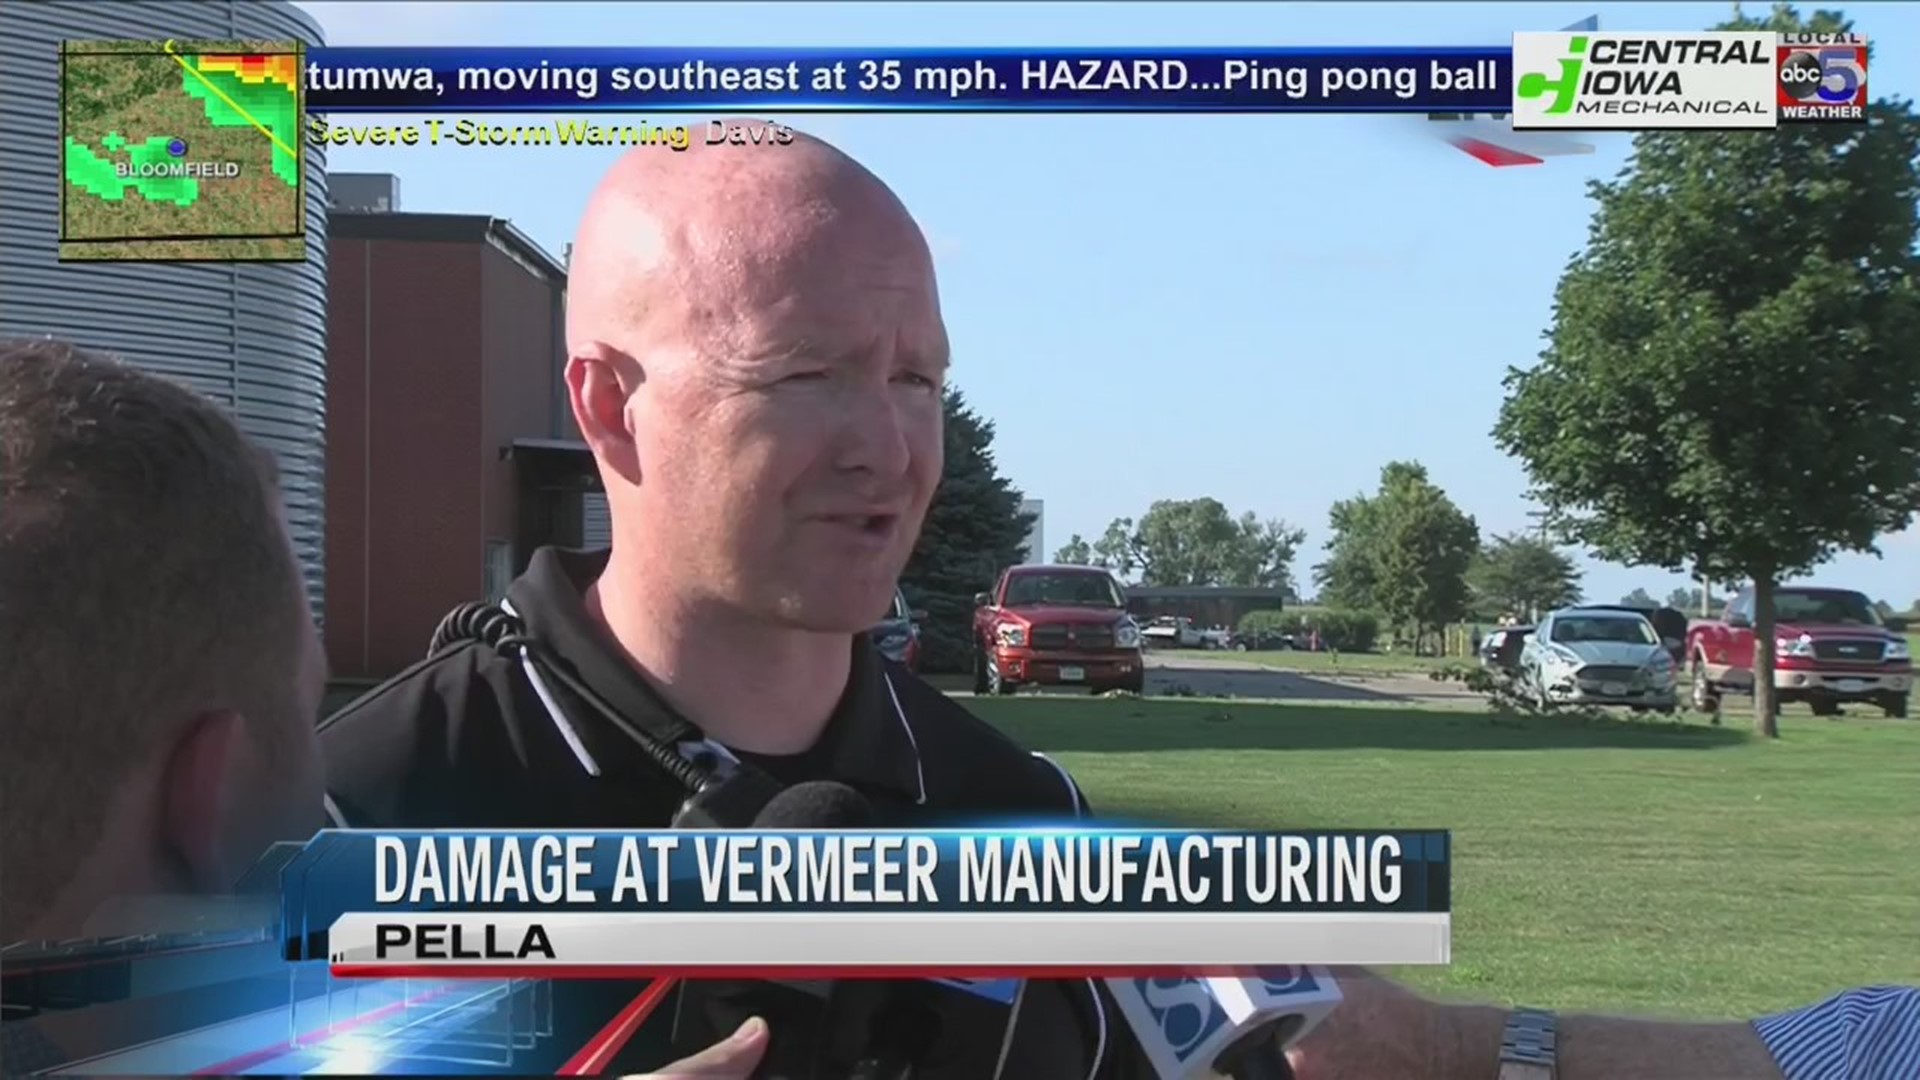 Vermeer Manufacturing in Pella damaged by tornado